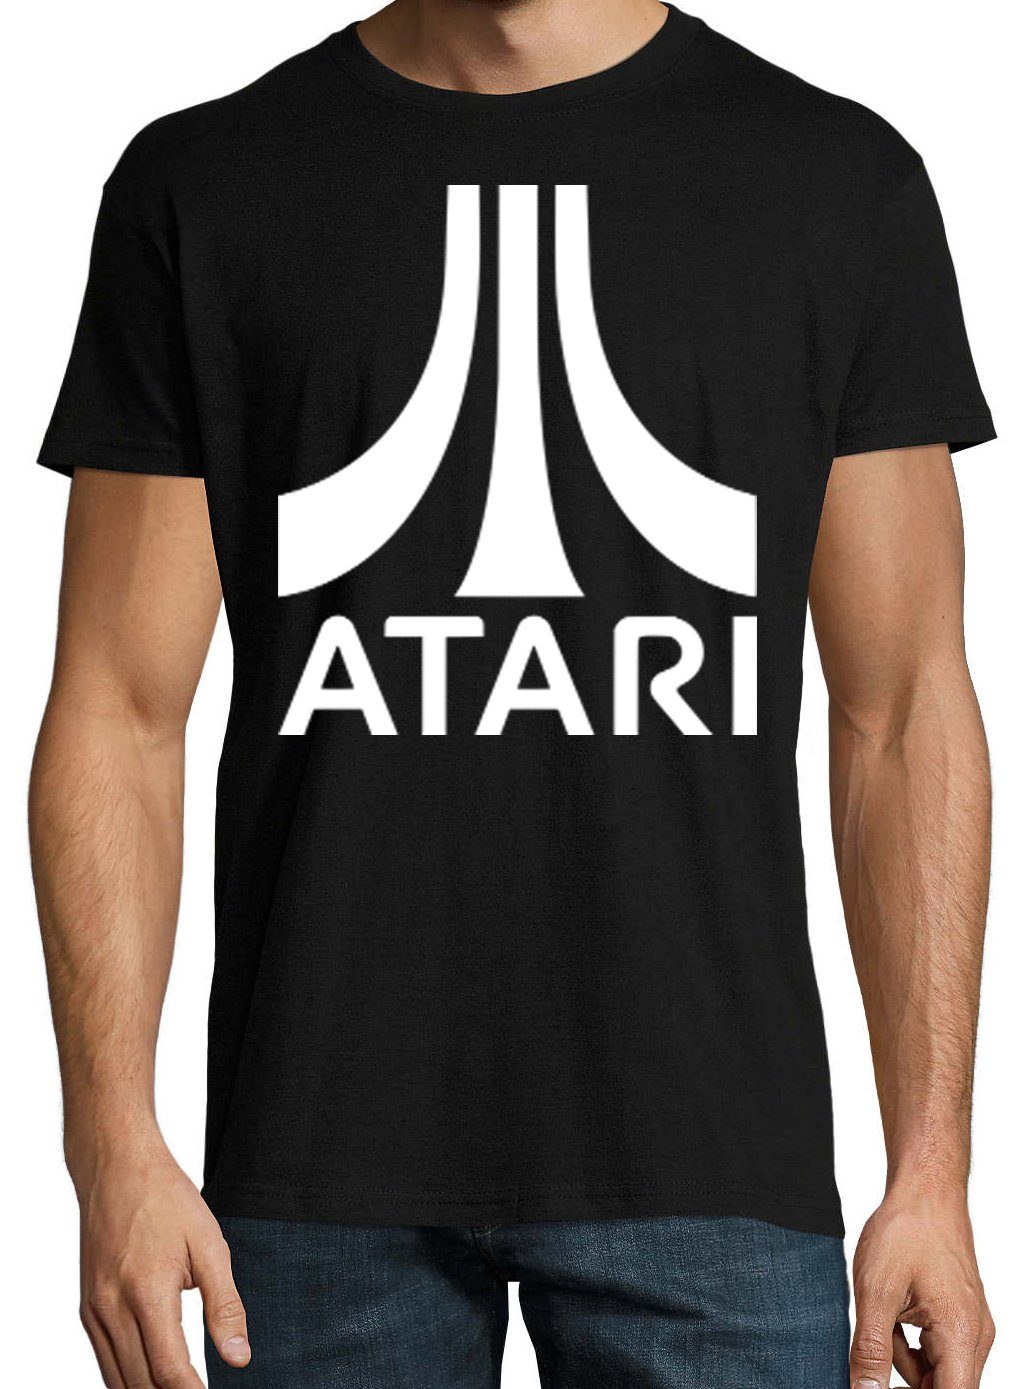 Youth Schwarz T-Shirt tredigem Frontprint mit Atari T-Shirt Herren Designz